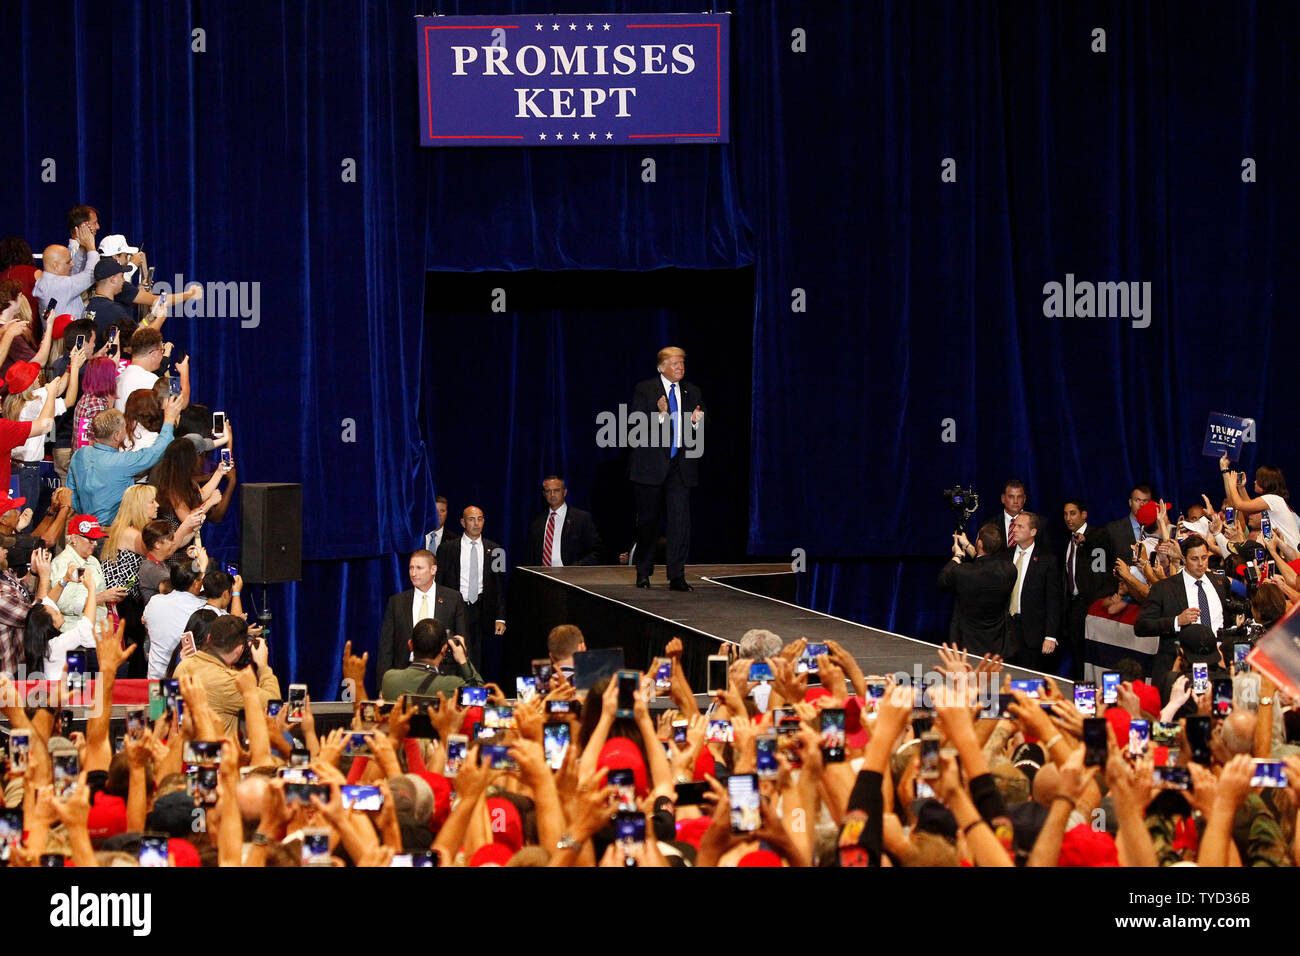 Präsident Donald Trump kommt auf der Bühne während der Kundgebung auf dem Las Vegas Convention Center in Las Vegas, Nevada am September 20, 2018. Foto von James Atoa/UPI Stockfoto